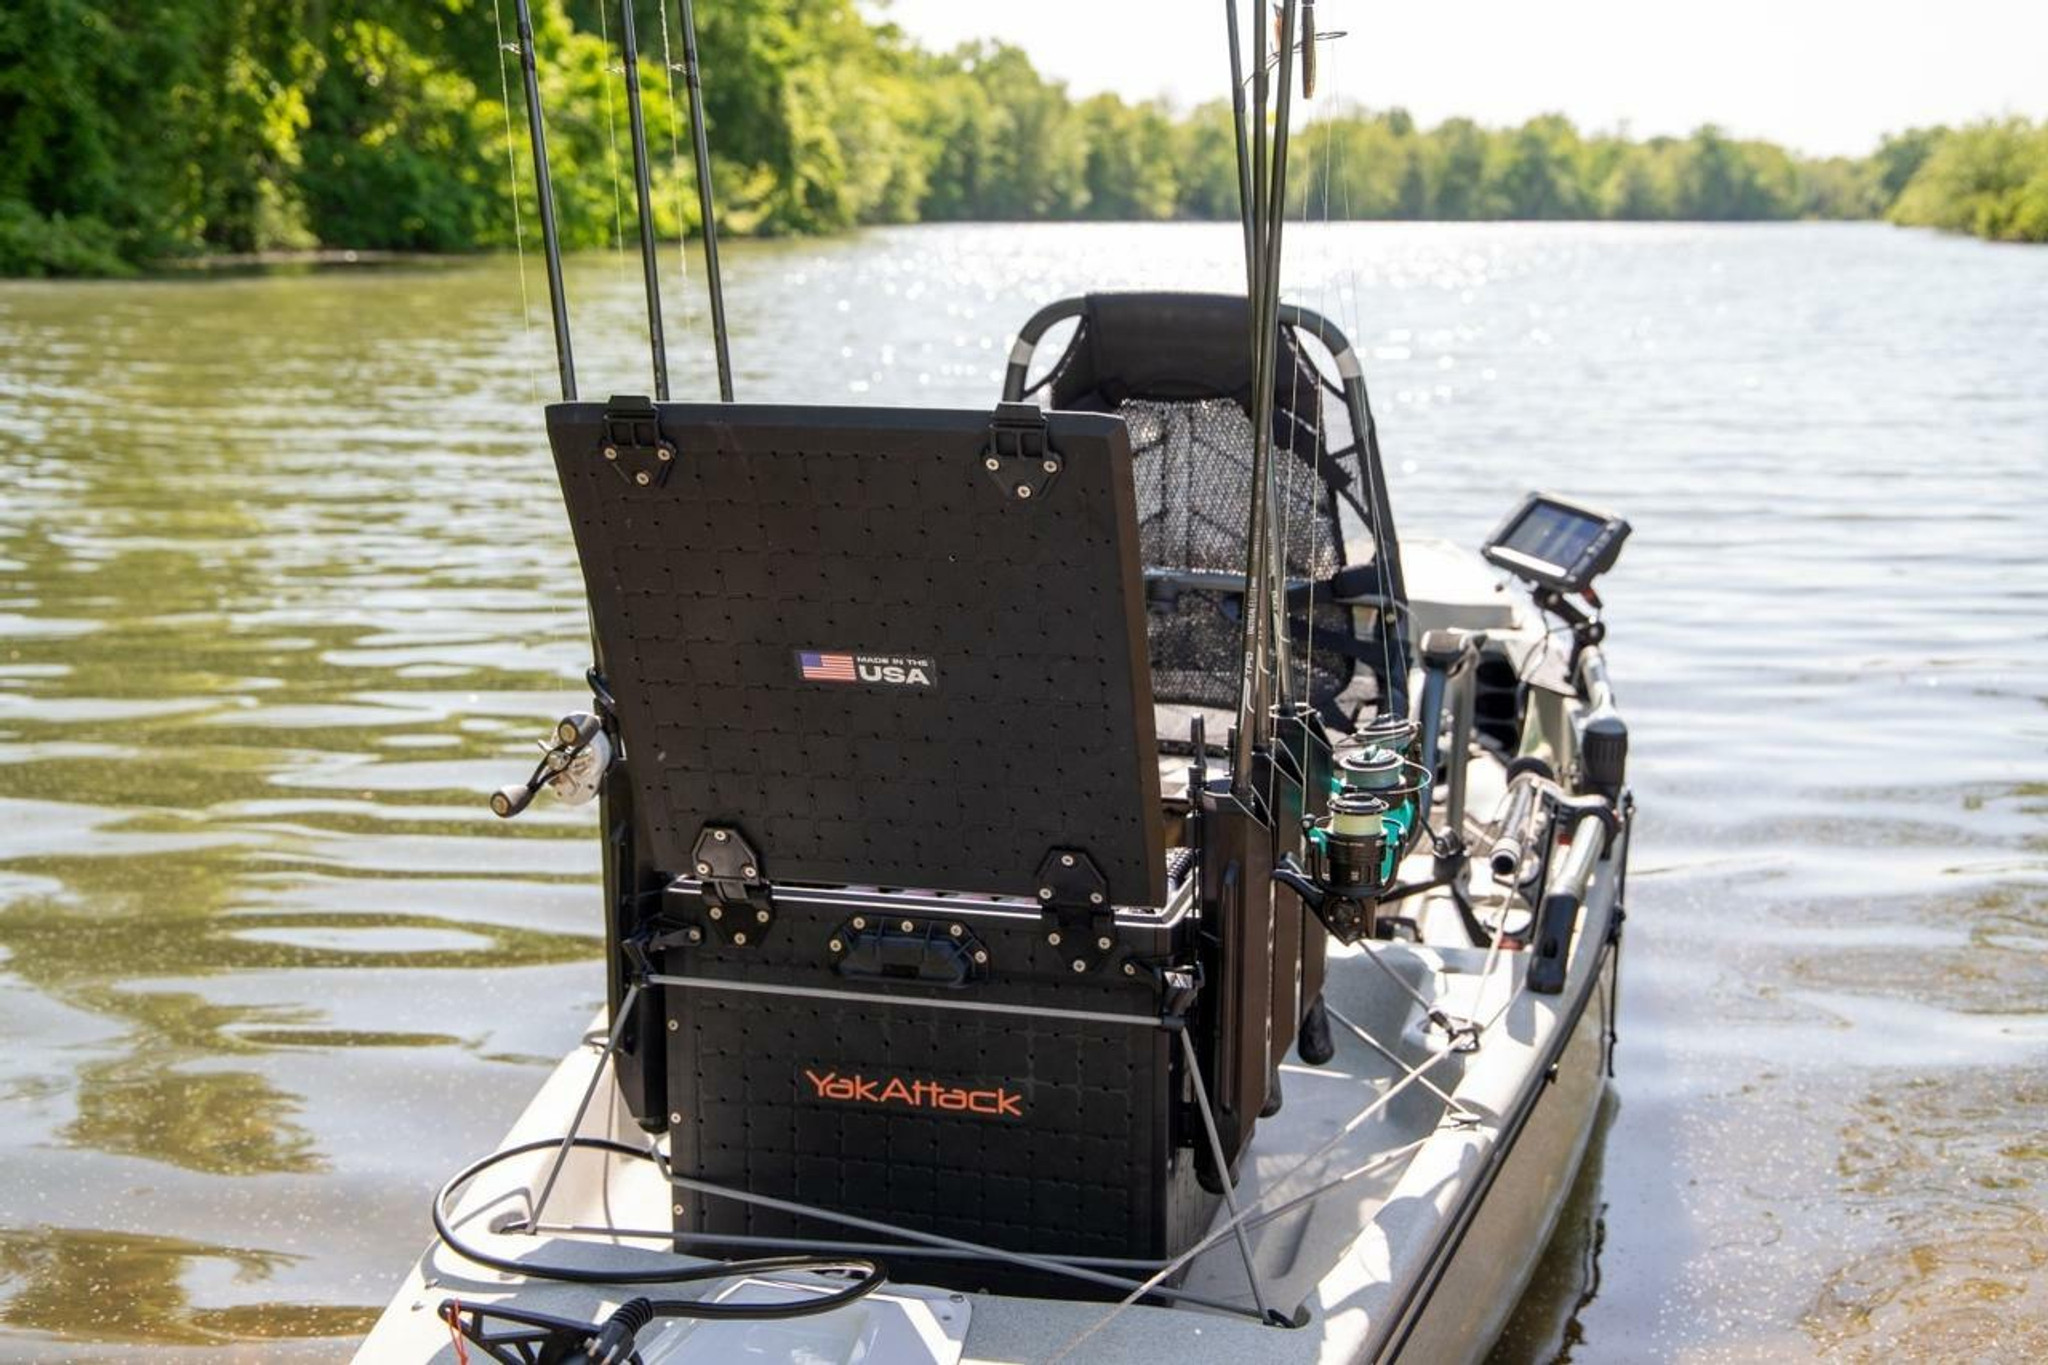 YakAttack® BlackPak Pro Kayak Fishing Crate 16 x 16 - Kayak Fishing Gear